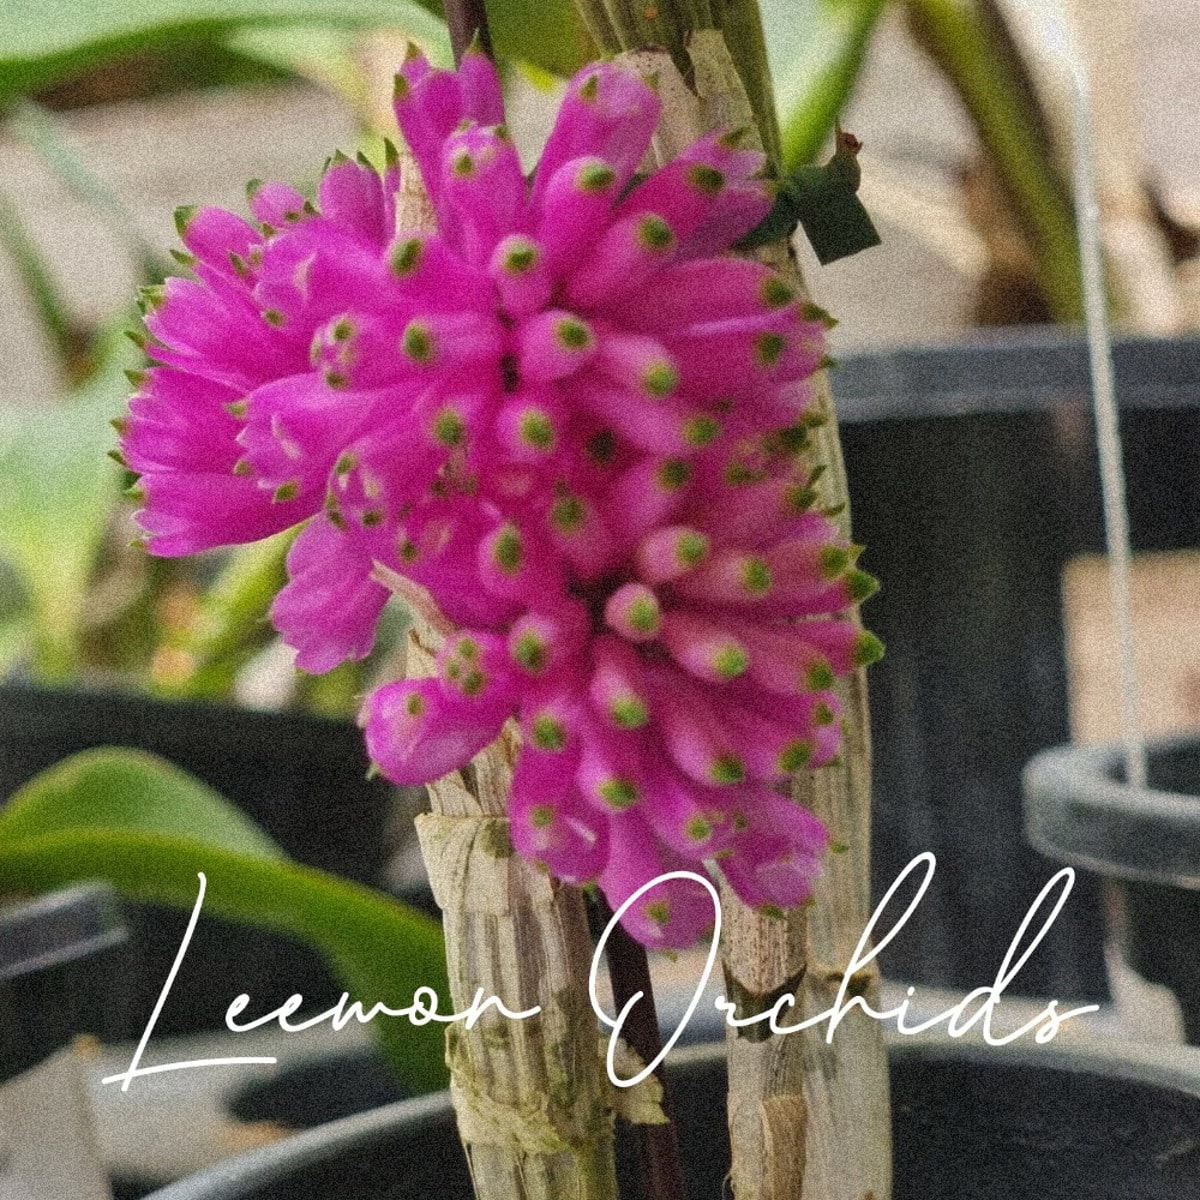 덴드로비움 퍼퍼리엄 레드 Dendrobium purpureum red (개화/ 온라인 한정재고: 1)